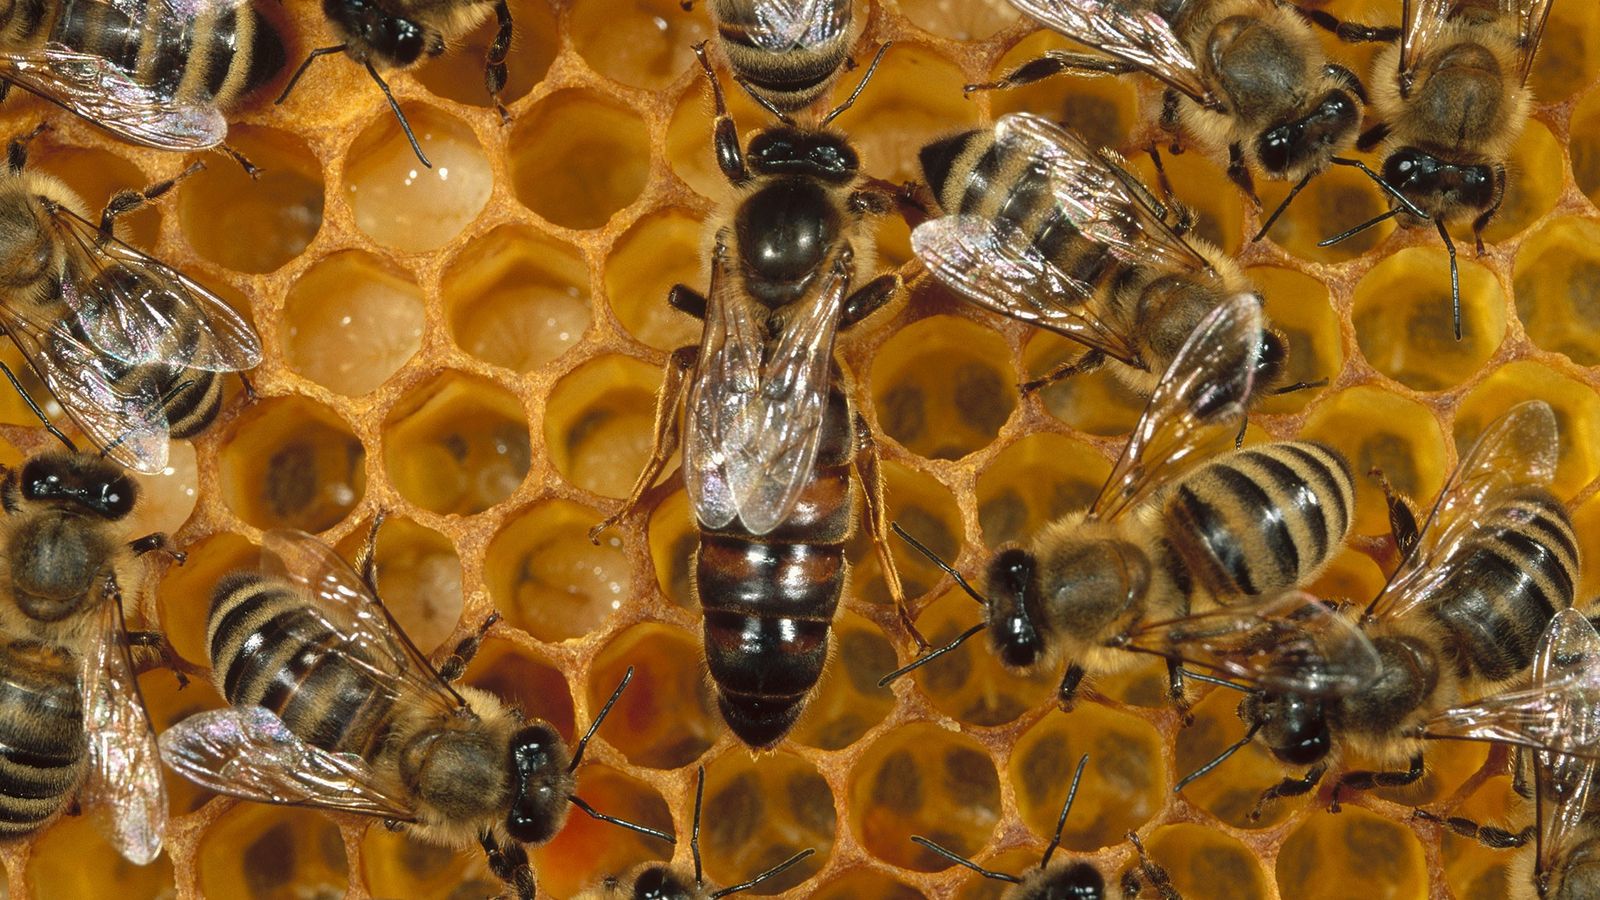 Soñar con abejas. Significado e interpretaciones